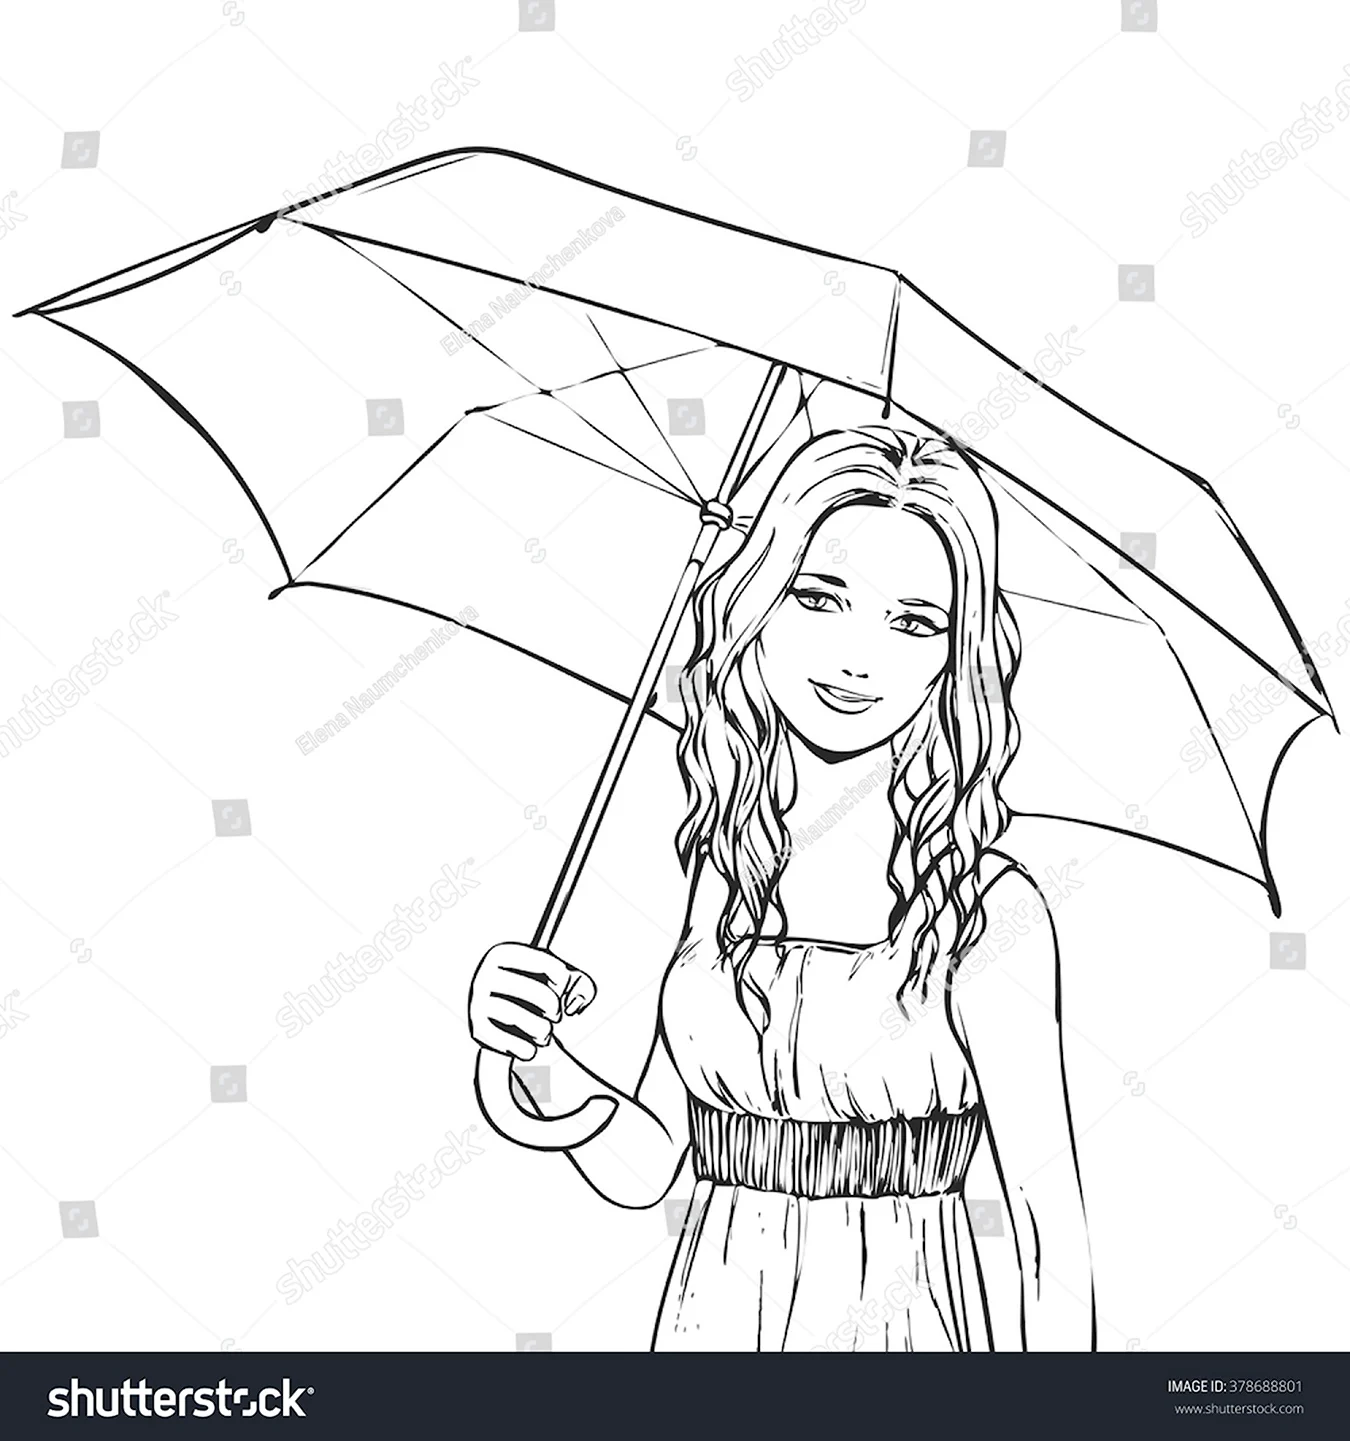 Контурное изображение девочки с зонтом в руках. Для срисовки